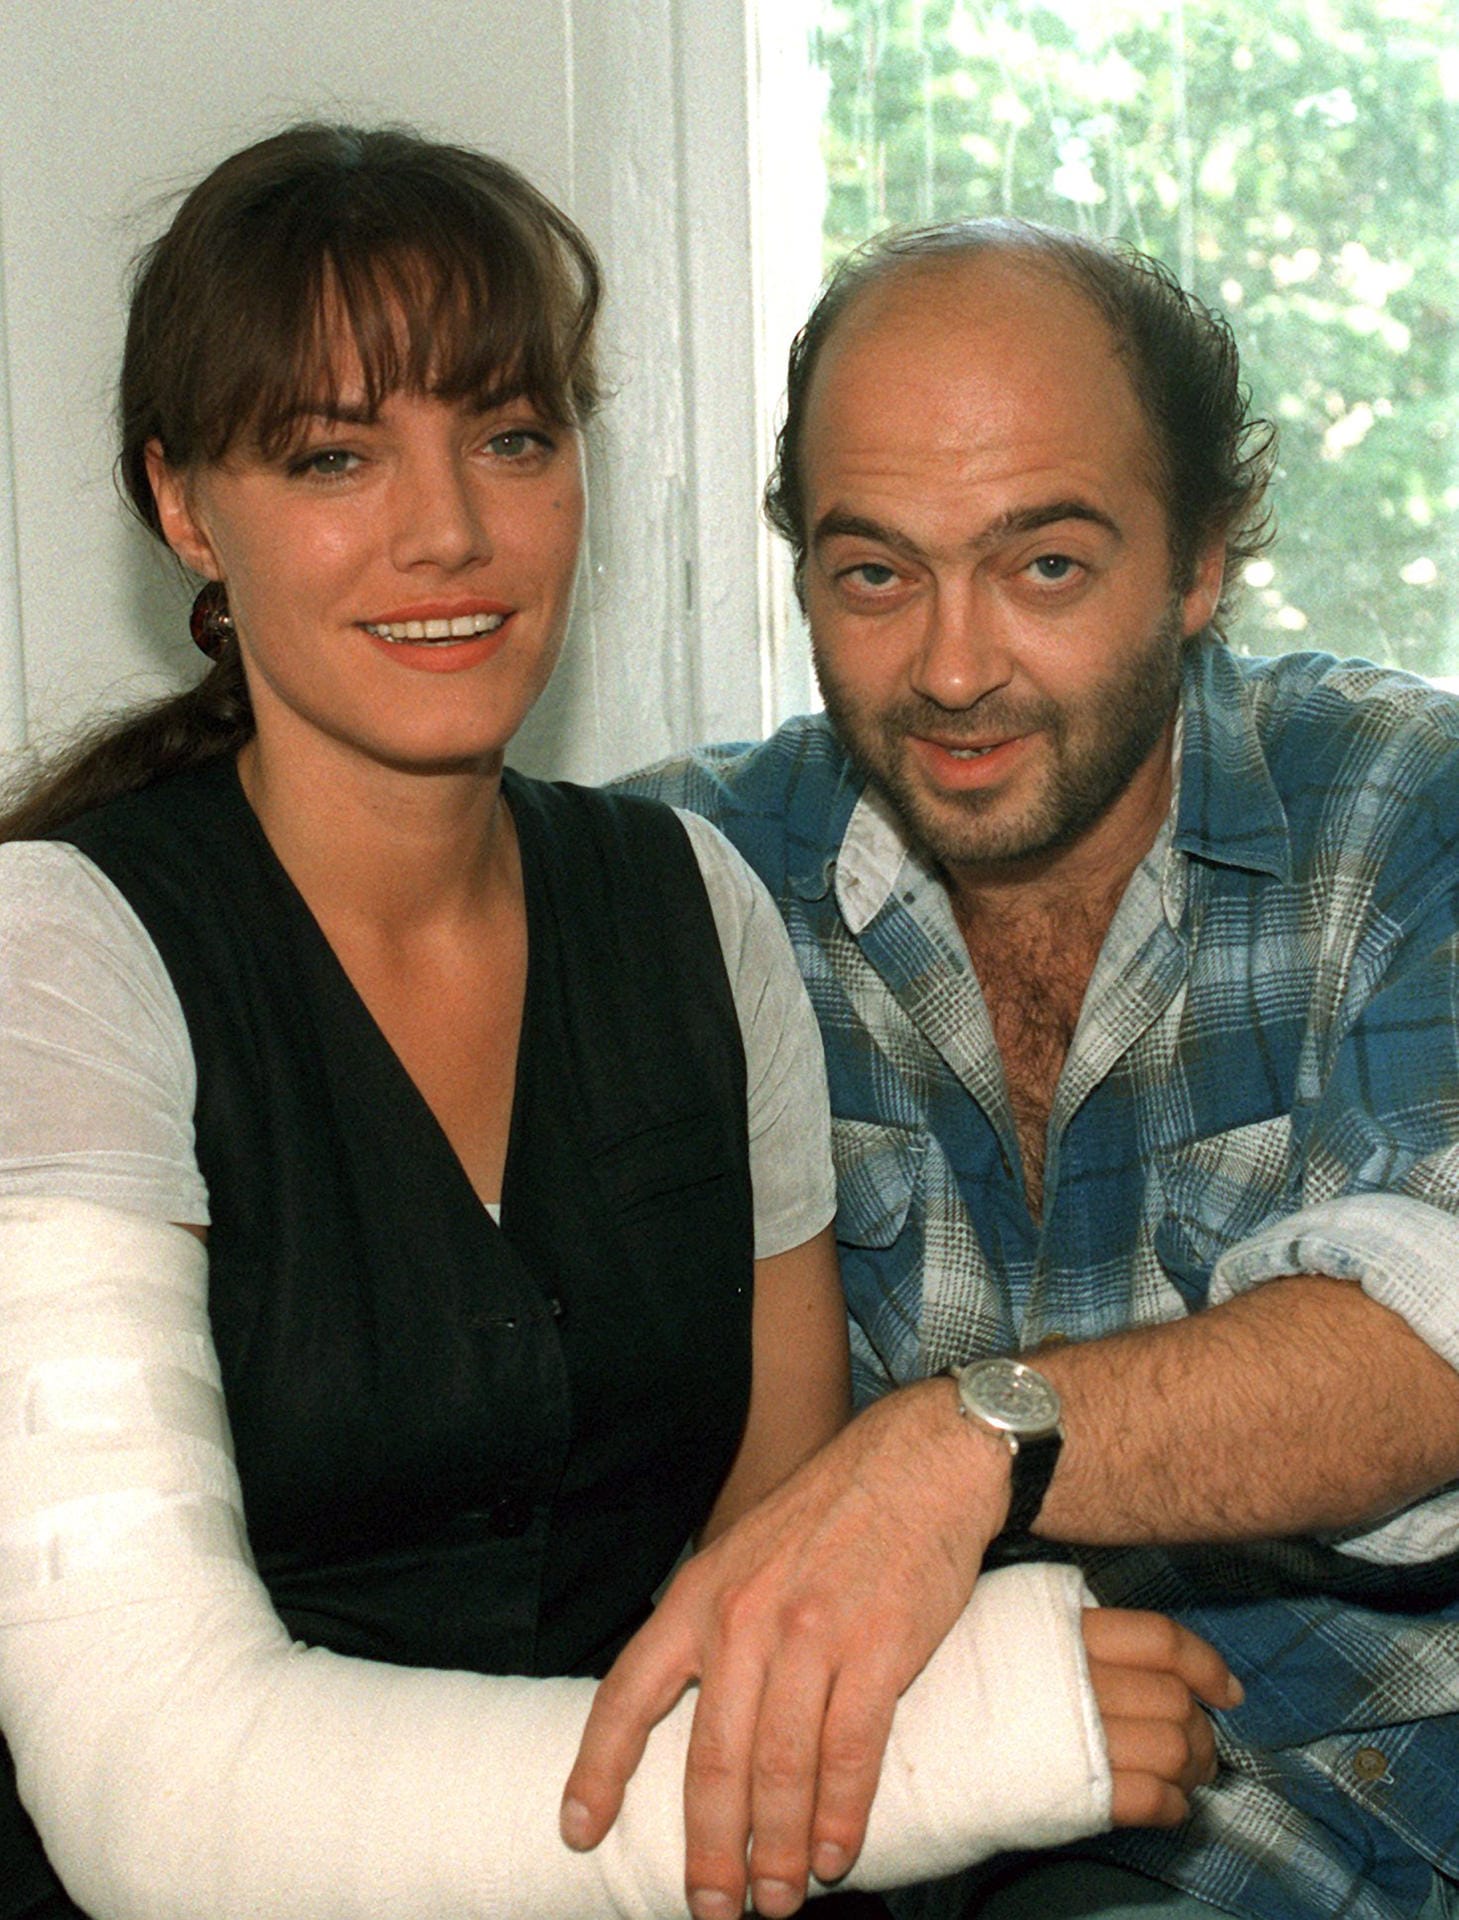 Mitte der 1990er Jahre waren Maranow und Martens auch privat ein Paar. Die Beziehung hielt jedoch nur zwei Jahre. Hier hält Martens den gebrochenen Arm seiner damaligen Partnerin in ihrer gemeinsamen Wohnung in Berlin-Charlottenburg.